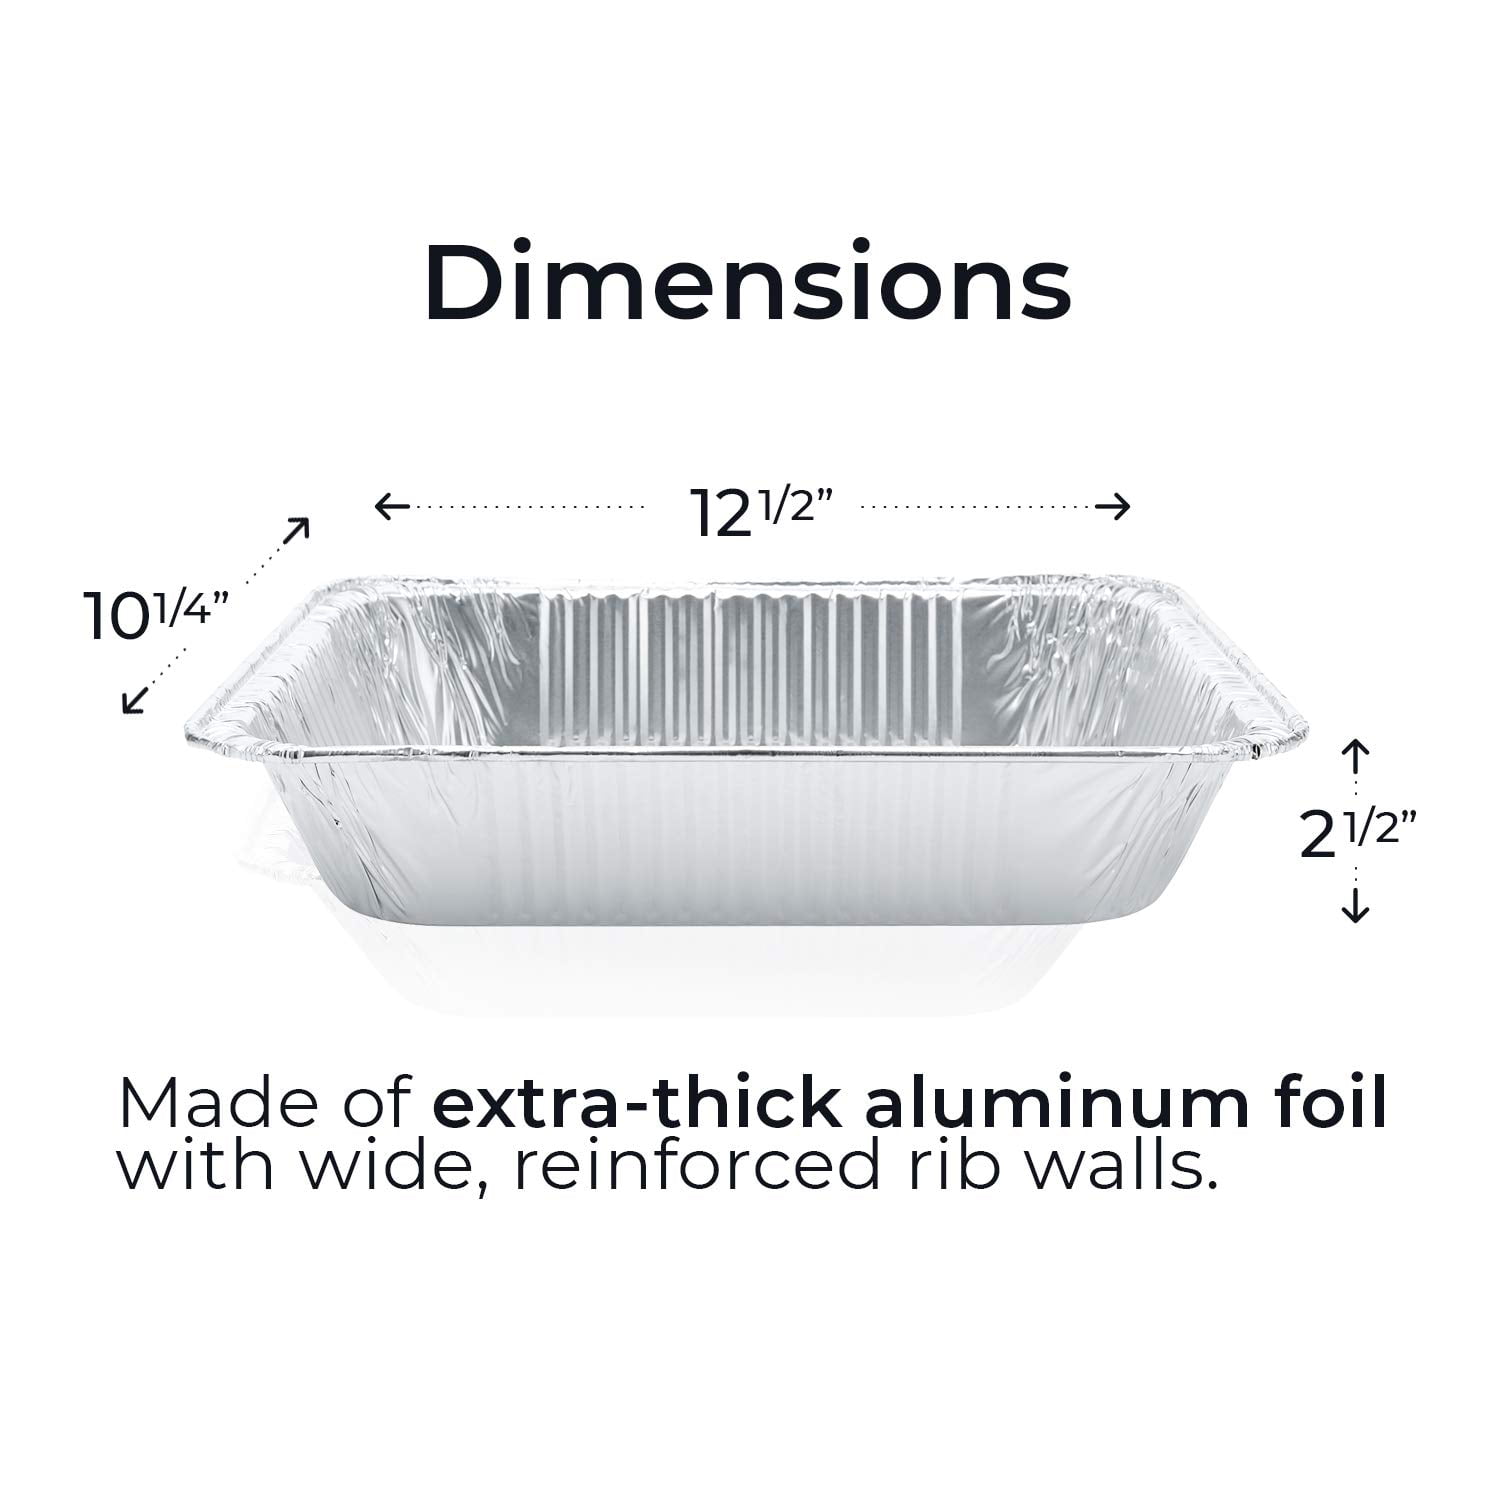 9x13x1.7 Disposable Foil Pans - Half Size Steam Table Aluminum